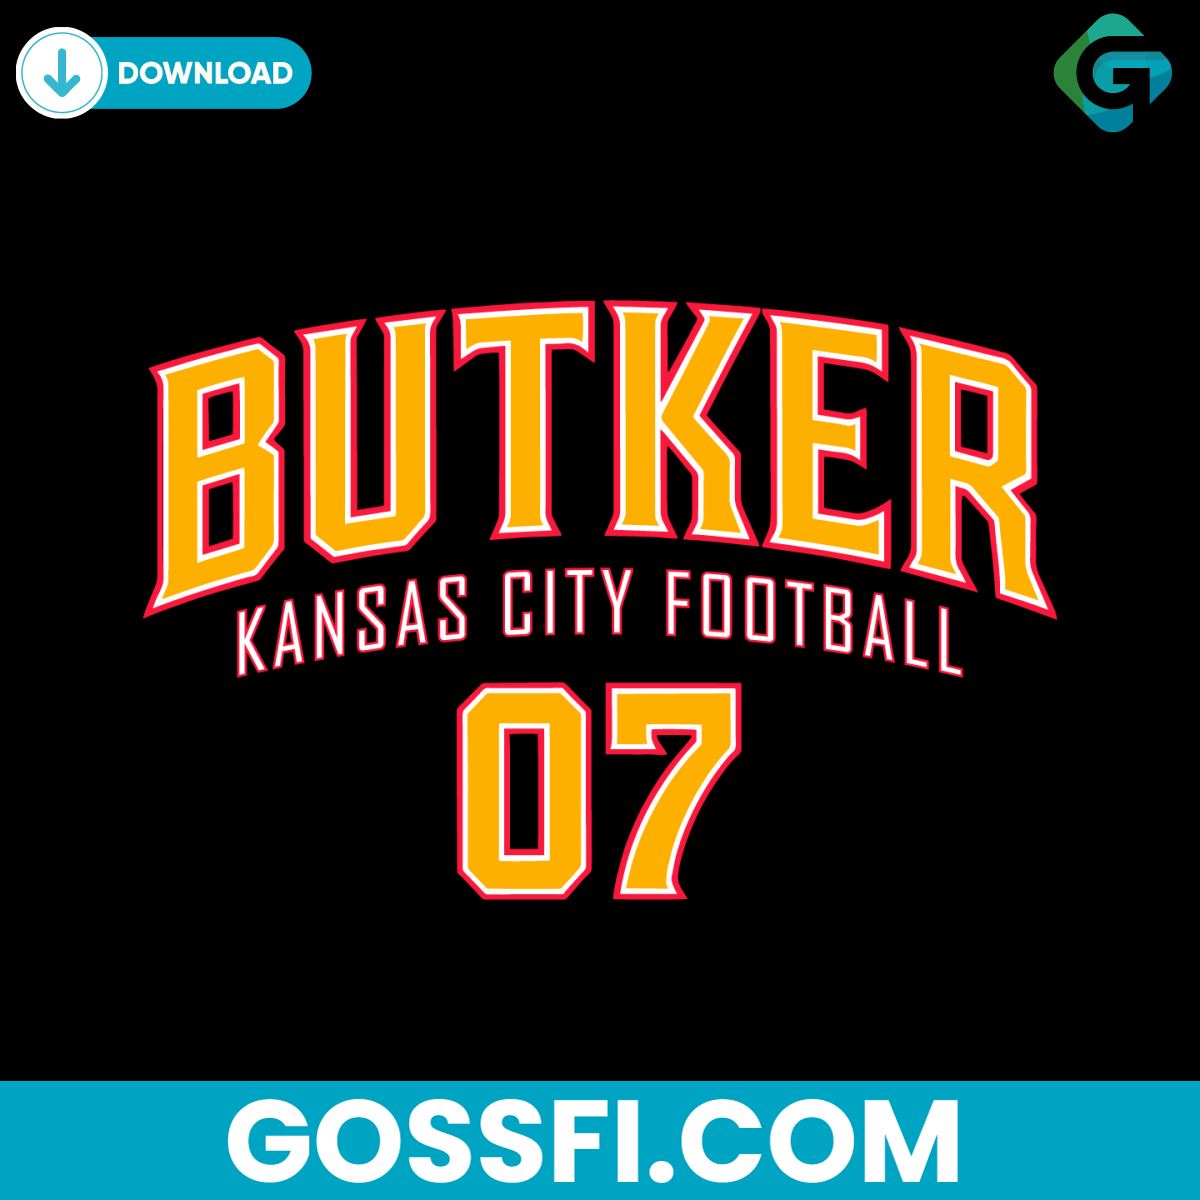 butker-kansas-city-football-player-svg-digital-download